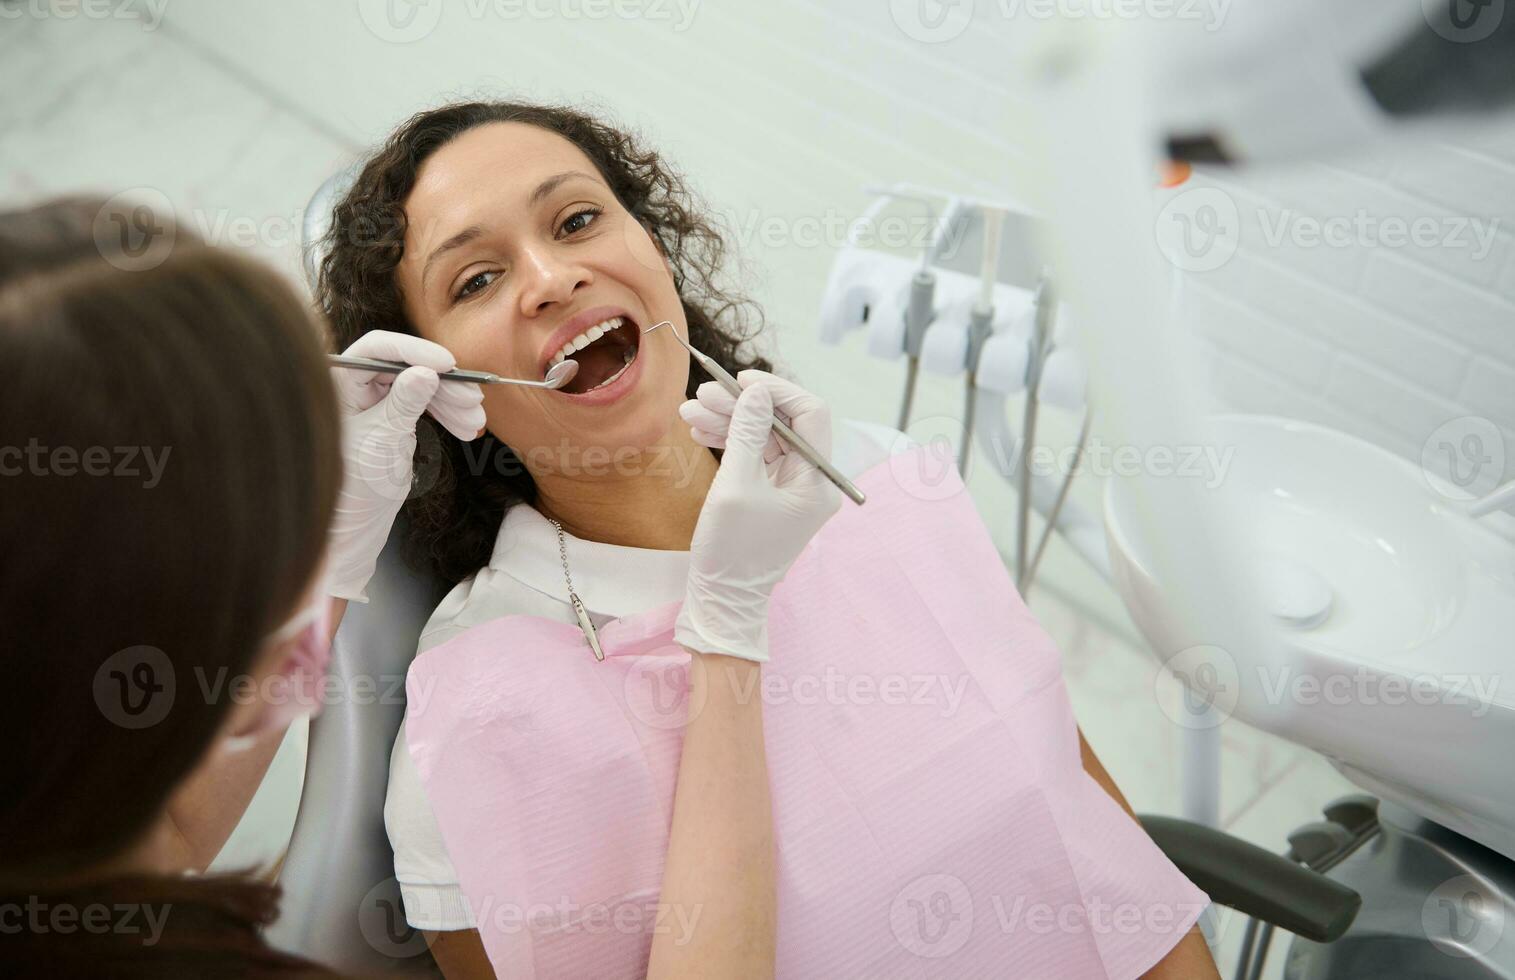 attrayant Jeune femme avec magnifique sourire est assis dans le dentiste chaise avec sa bouche ouvert tandis que le hygiéniste examine ou traite sa les dents en utilisant inoxydable acier dentaire instruments - miroir et sonde photo